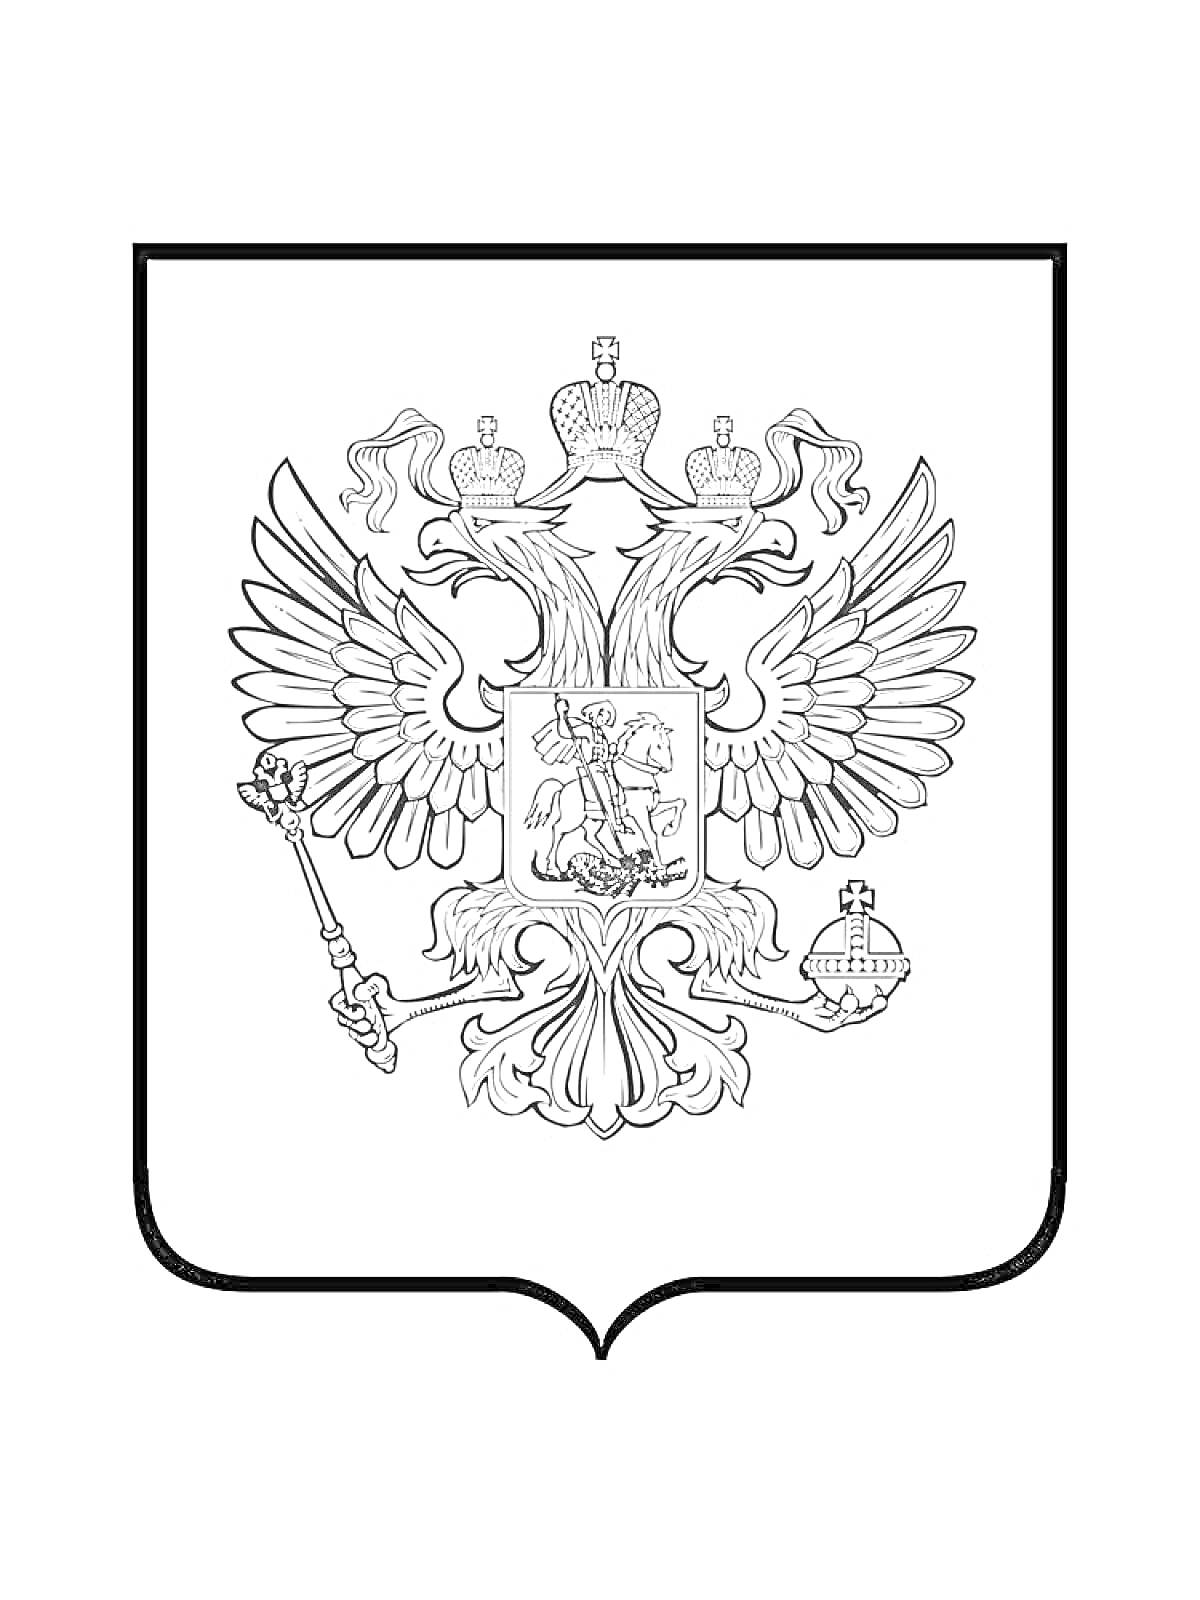 Раскраска Герб с двуглавым орлом, держащим скипетр и державу, с щитом на груди, на котором изображен святой Георгий, поражающий змея